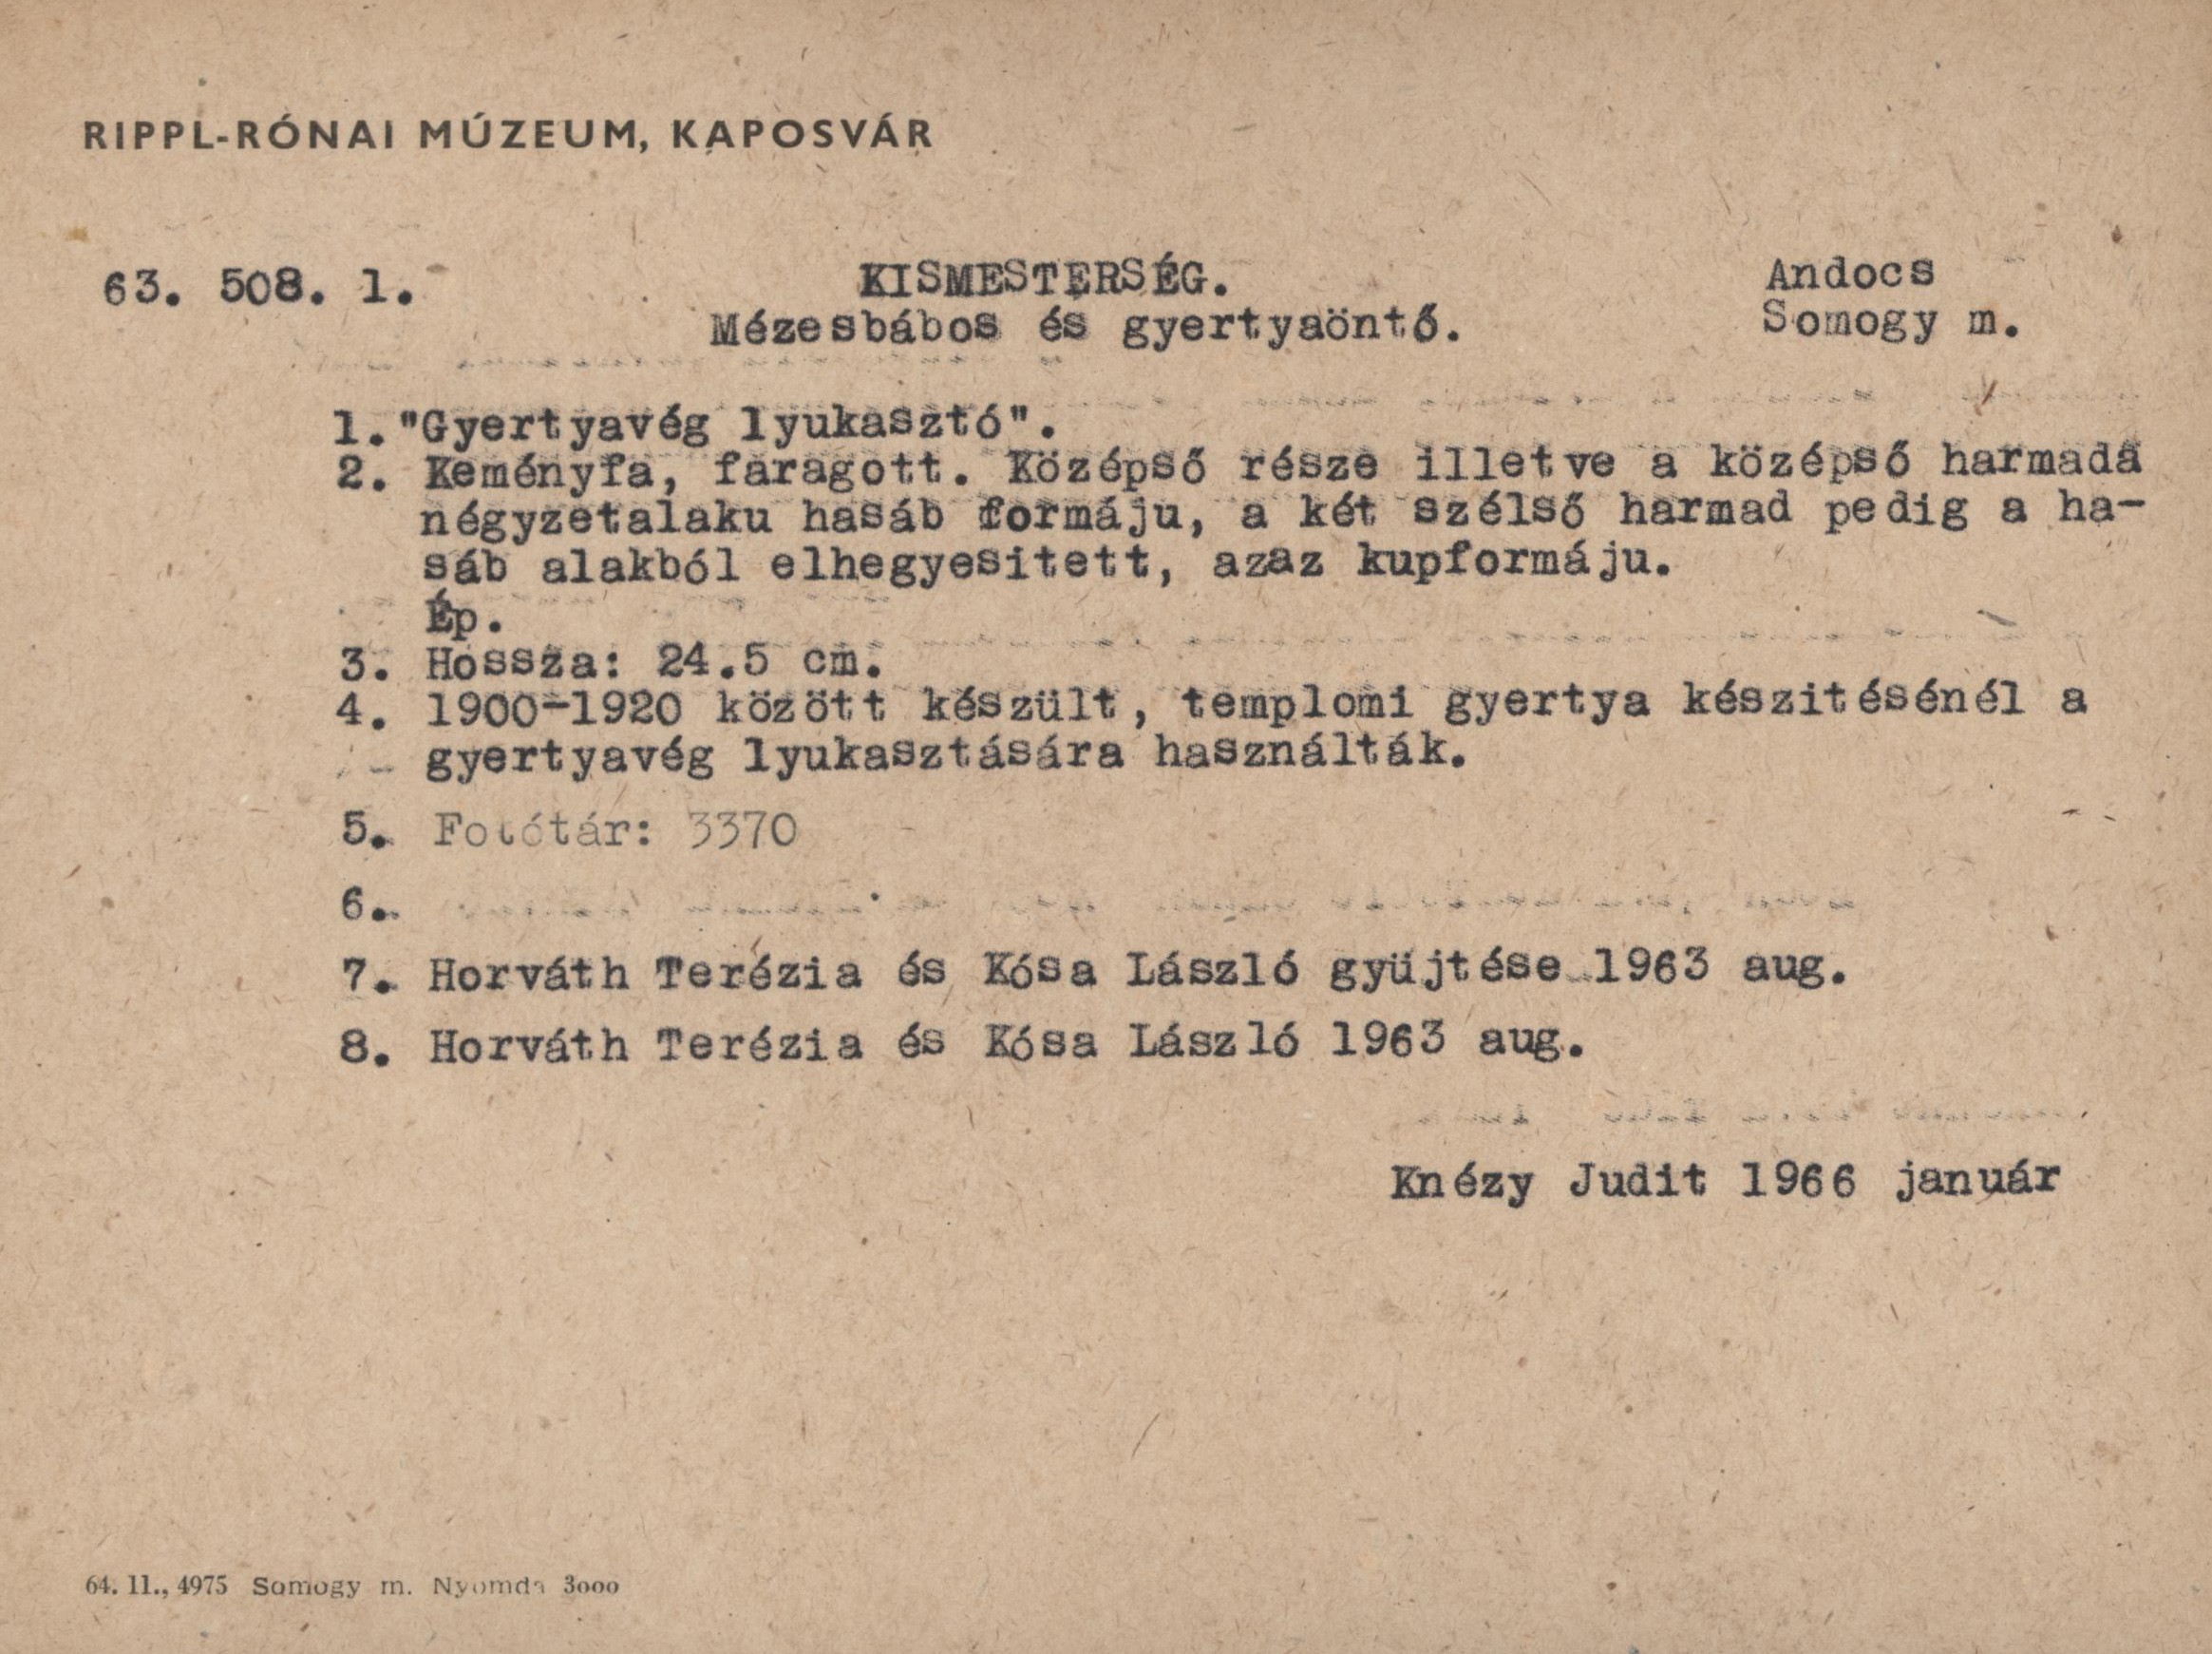 Gyertyavég lyukasztó (Rippl-Rónai Múzeum CC BY-NC-ND)